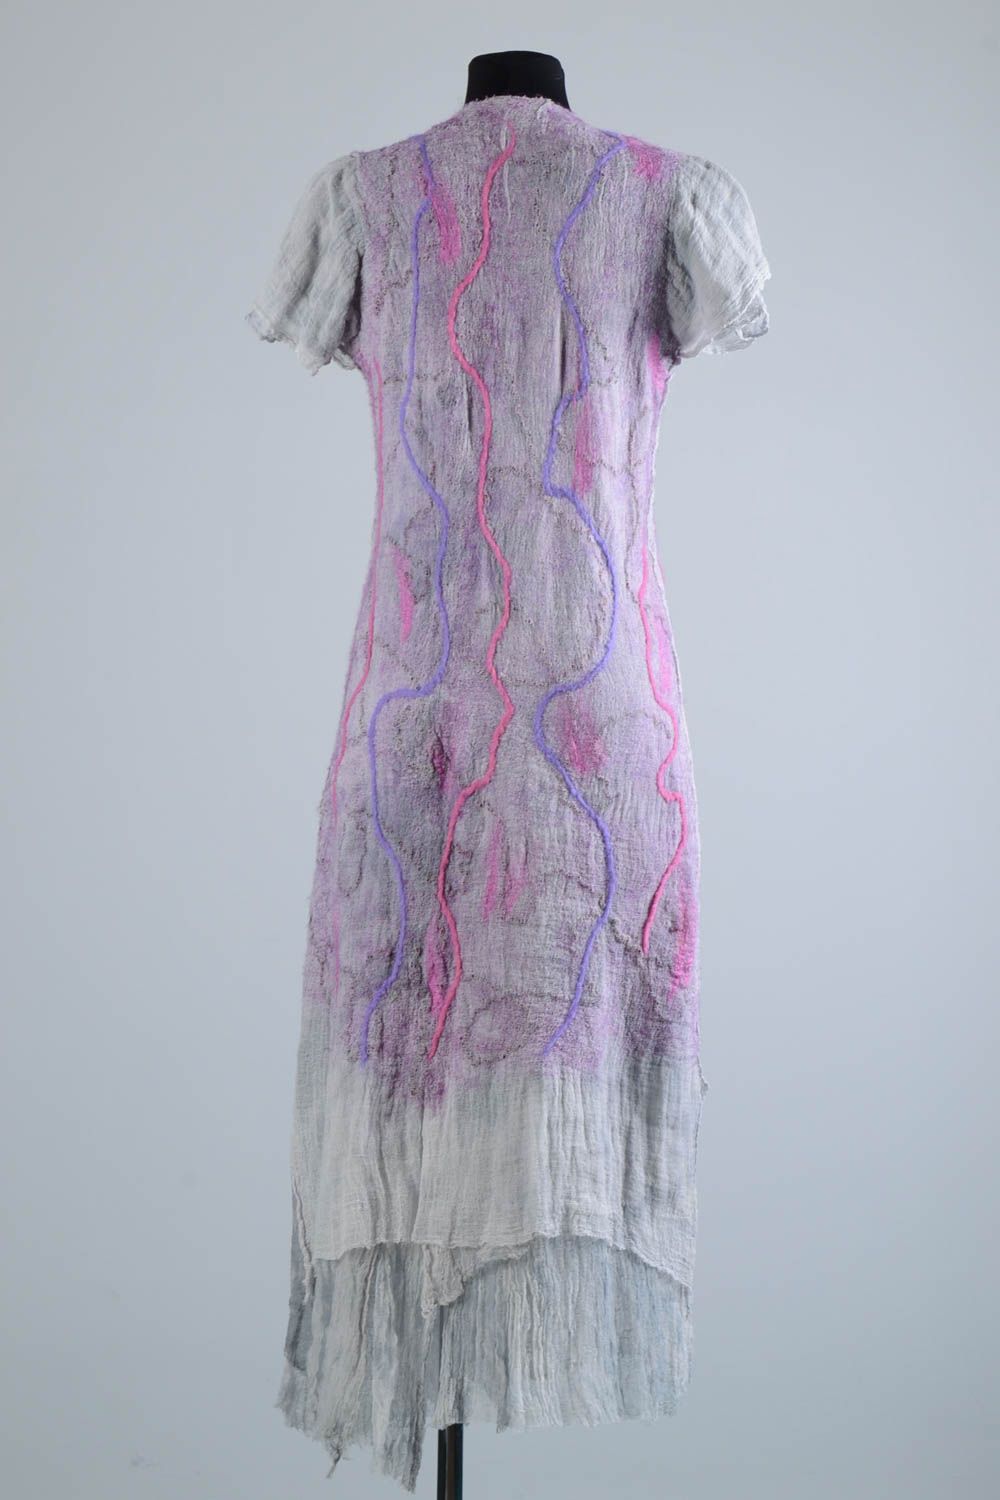 Длинное платье ручной работы валяное платье сиреневое шерстяное женское платье фото 4